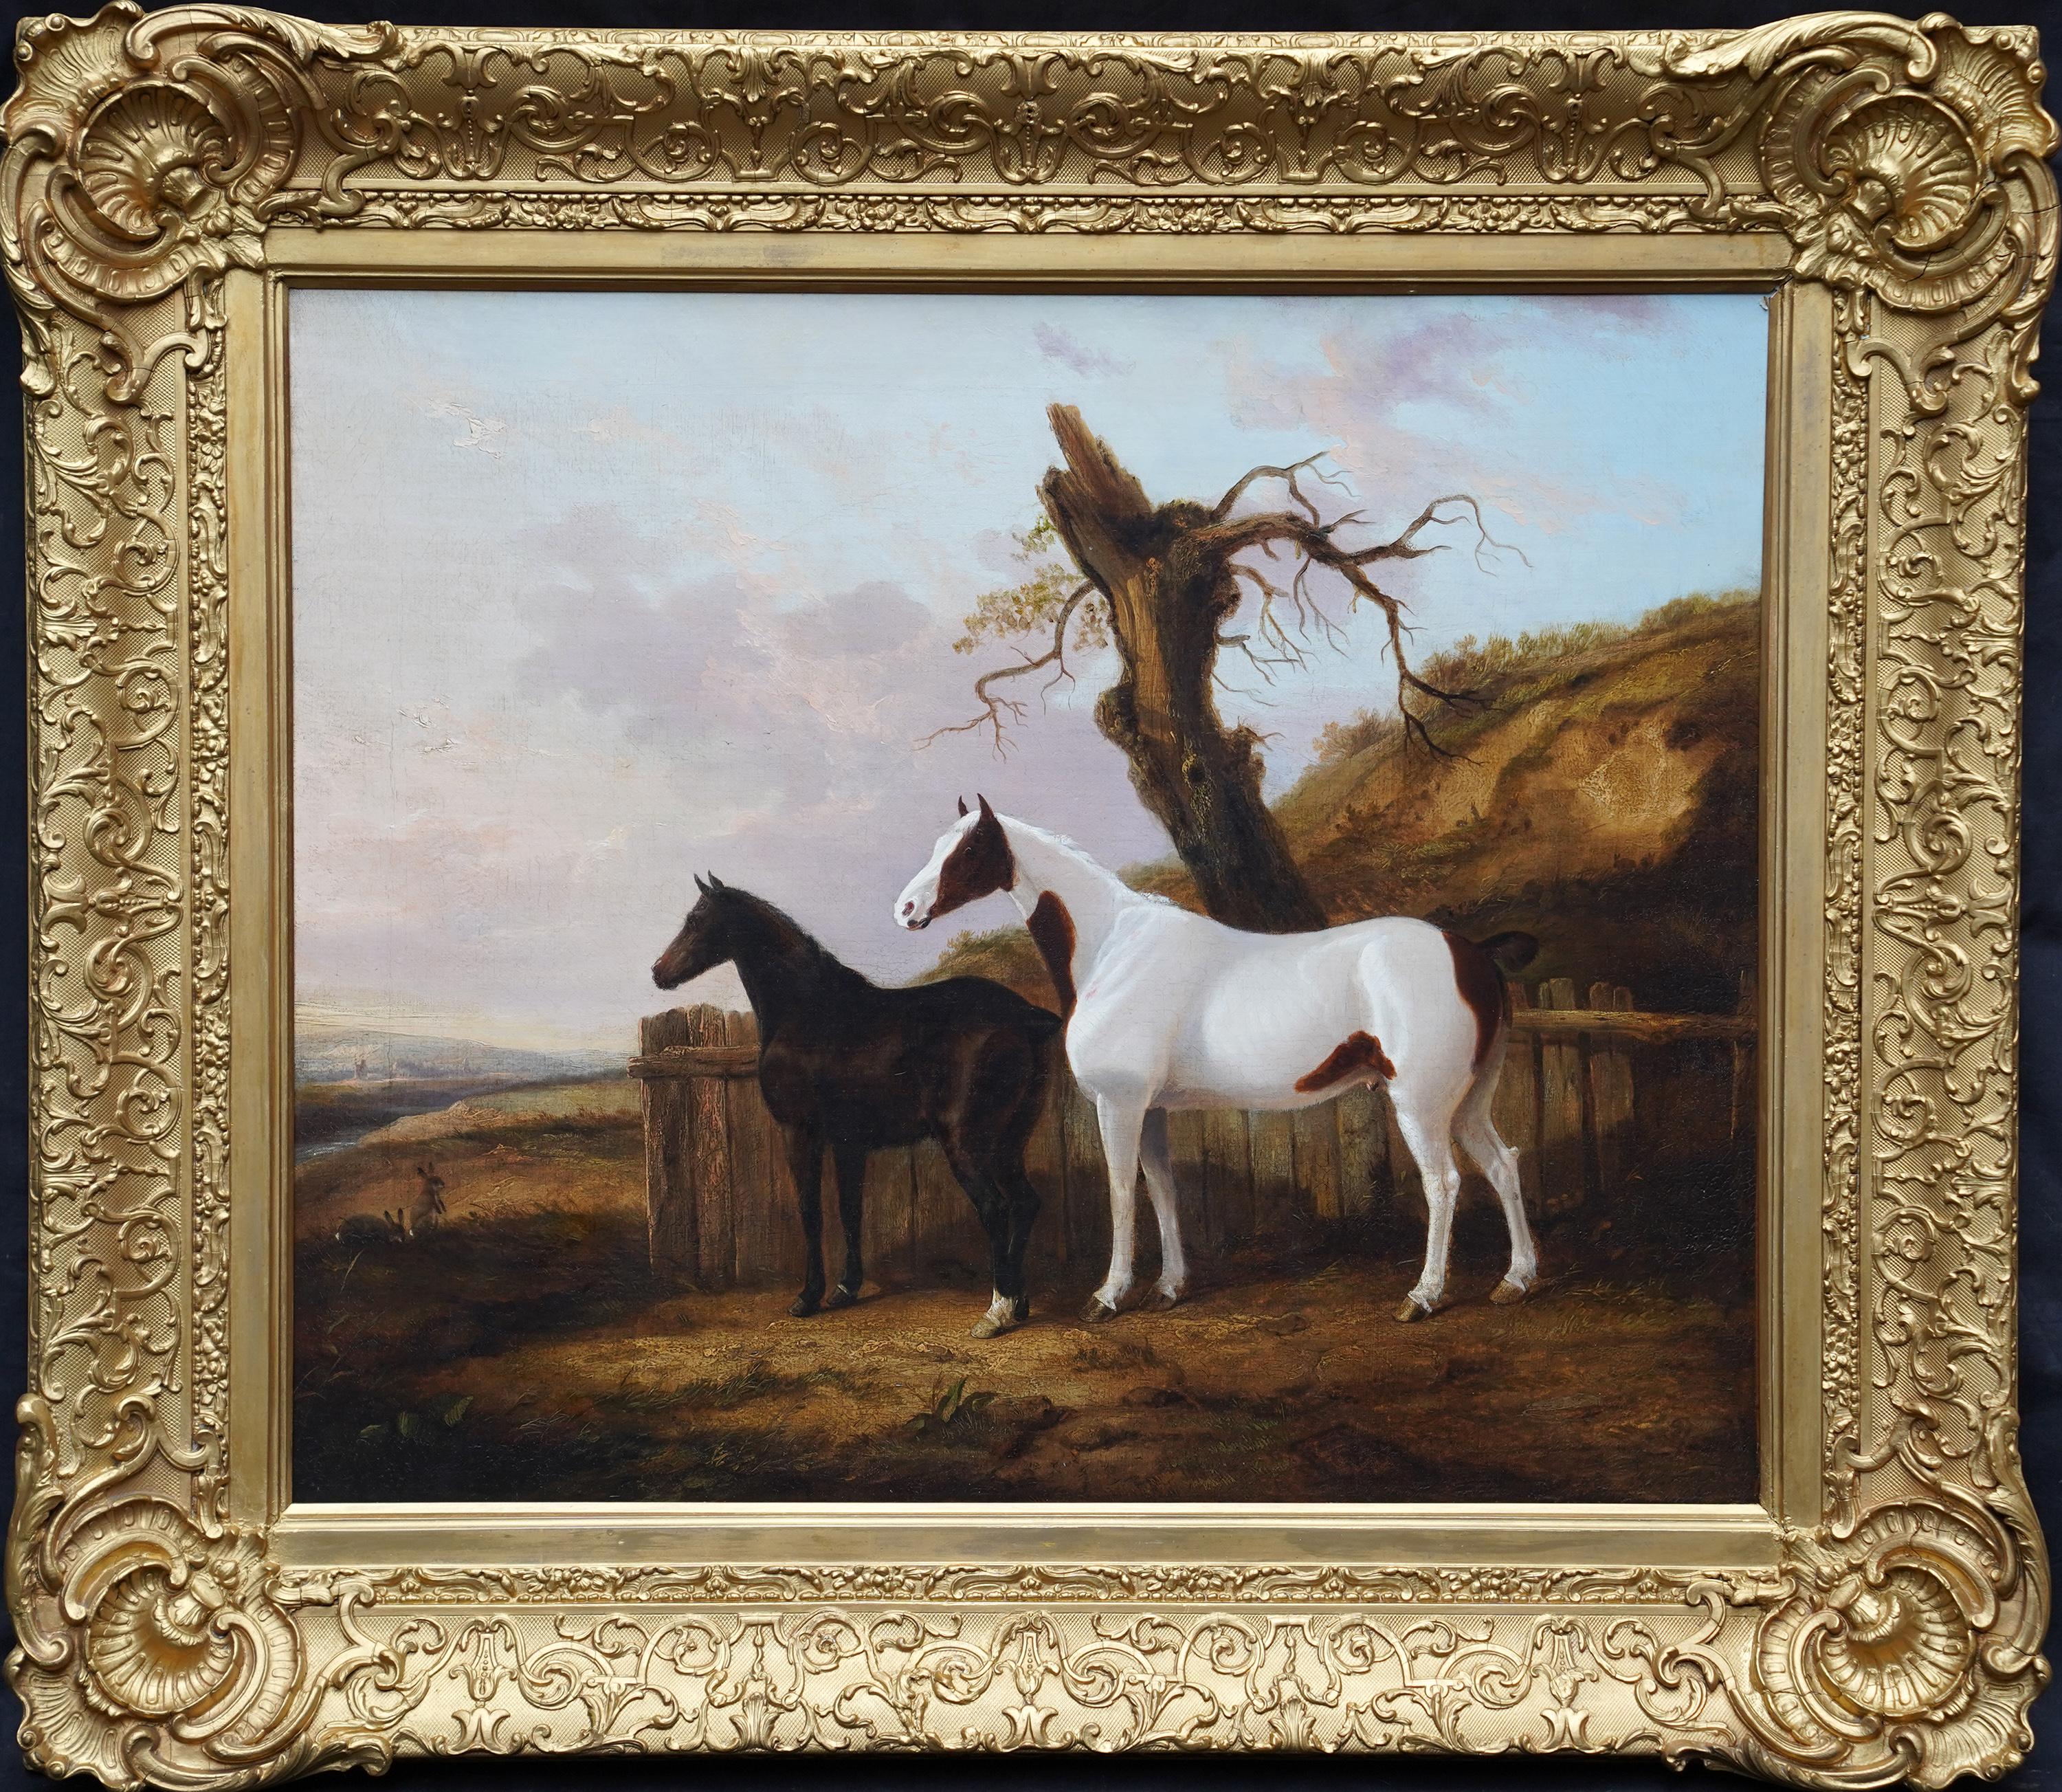 Porträt von zwei Pferden in einer Landschaft – britisches Ölgemälde aus dem 19. Jahrhundert